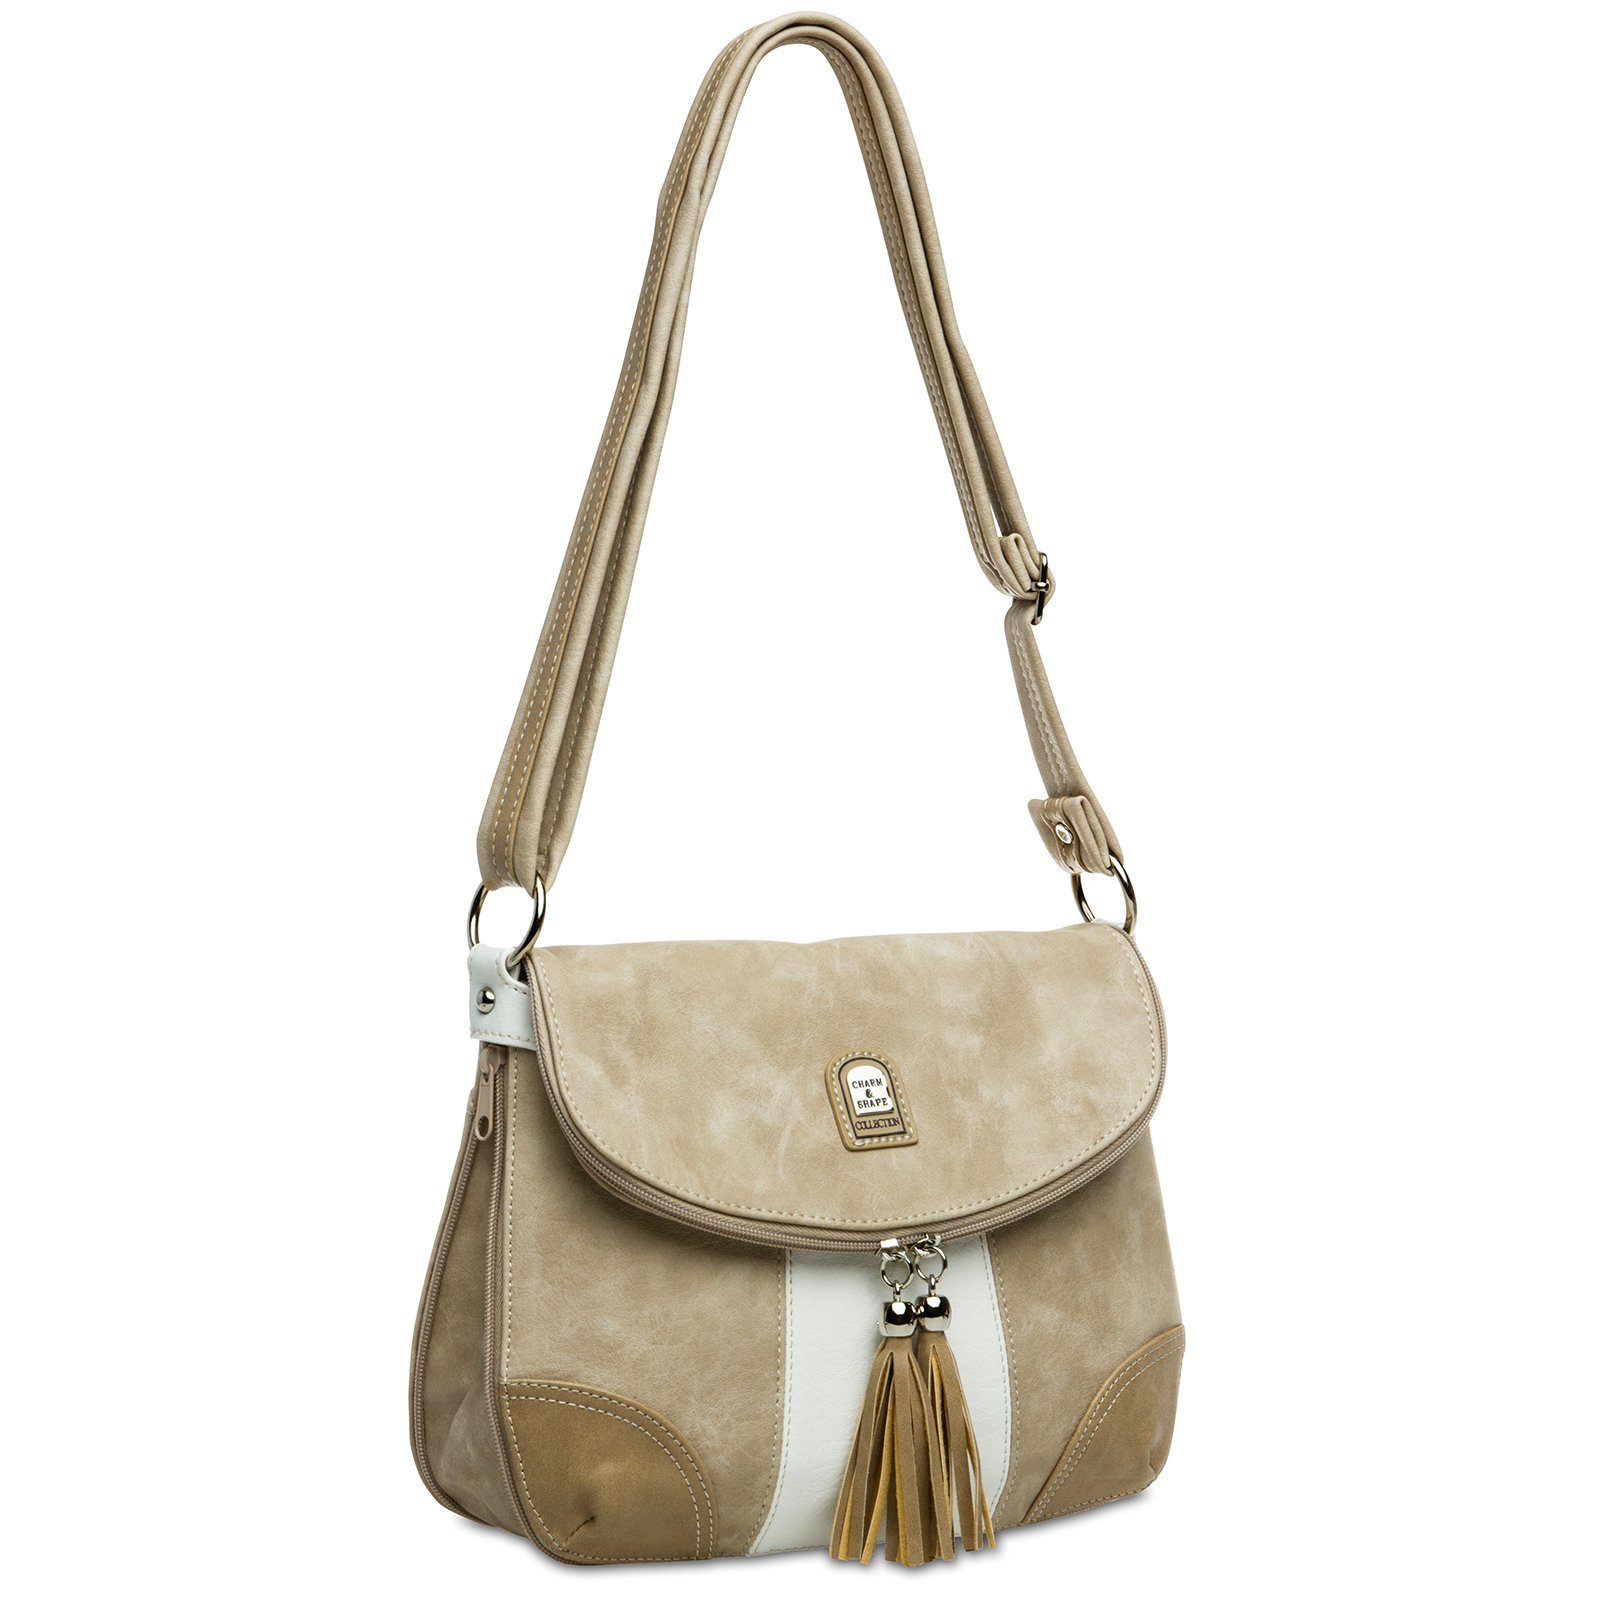 Rucksack diverse Tasche #15105 - Umhängetasche Modelle beige Caspar Damen Umhängetasche weiß Handtasche TS1028 Umhängetasche